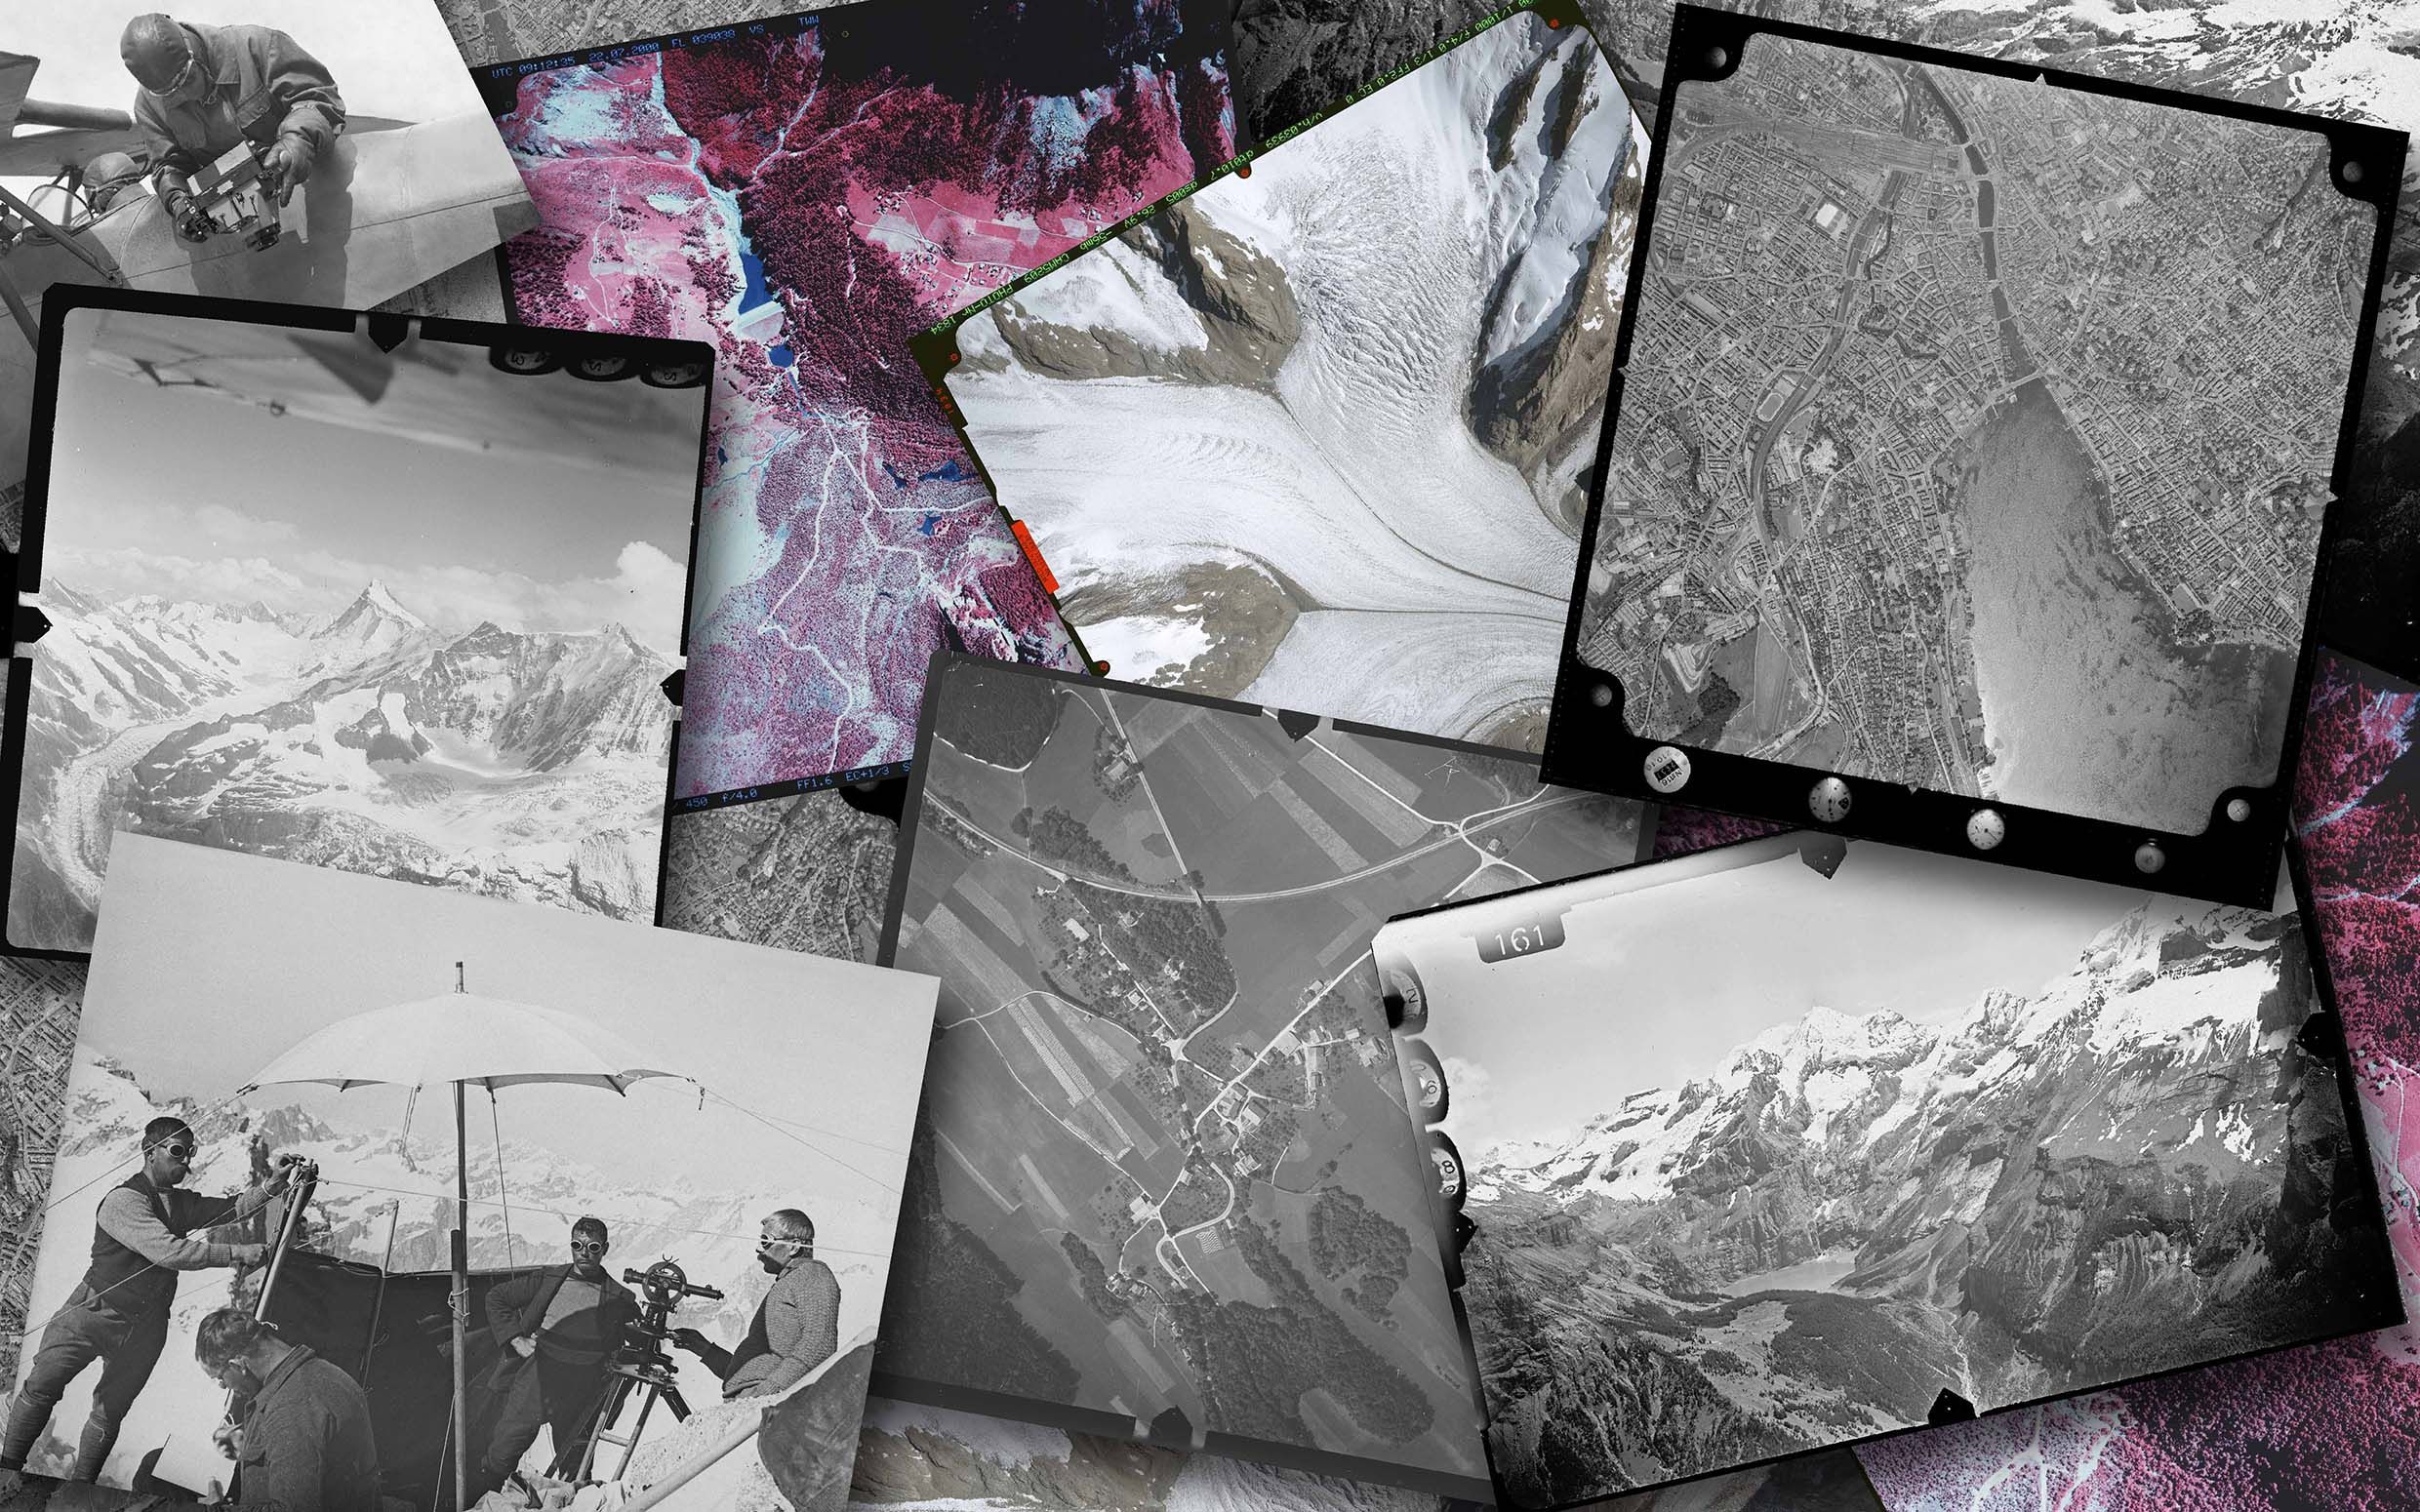 Beispiele von historischen Lutbildern und terrestrischen Aufnahmen aus der Bildsammung von swisstopo in Form einer Collage.